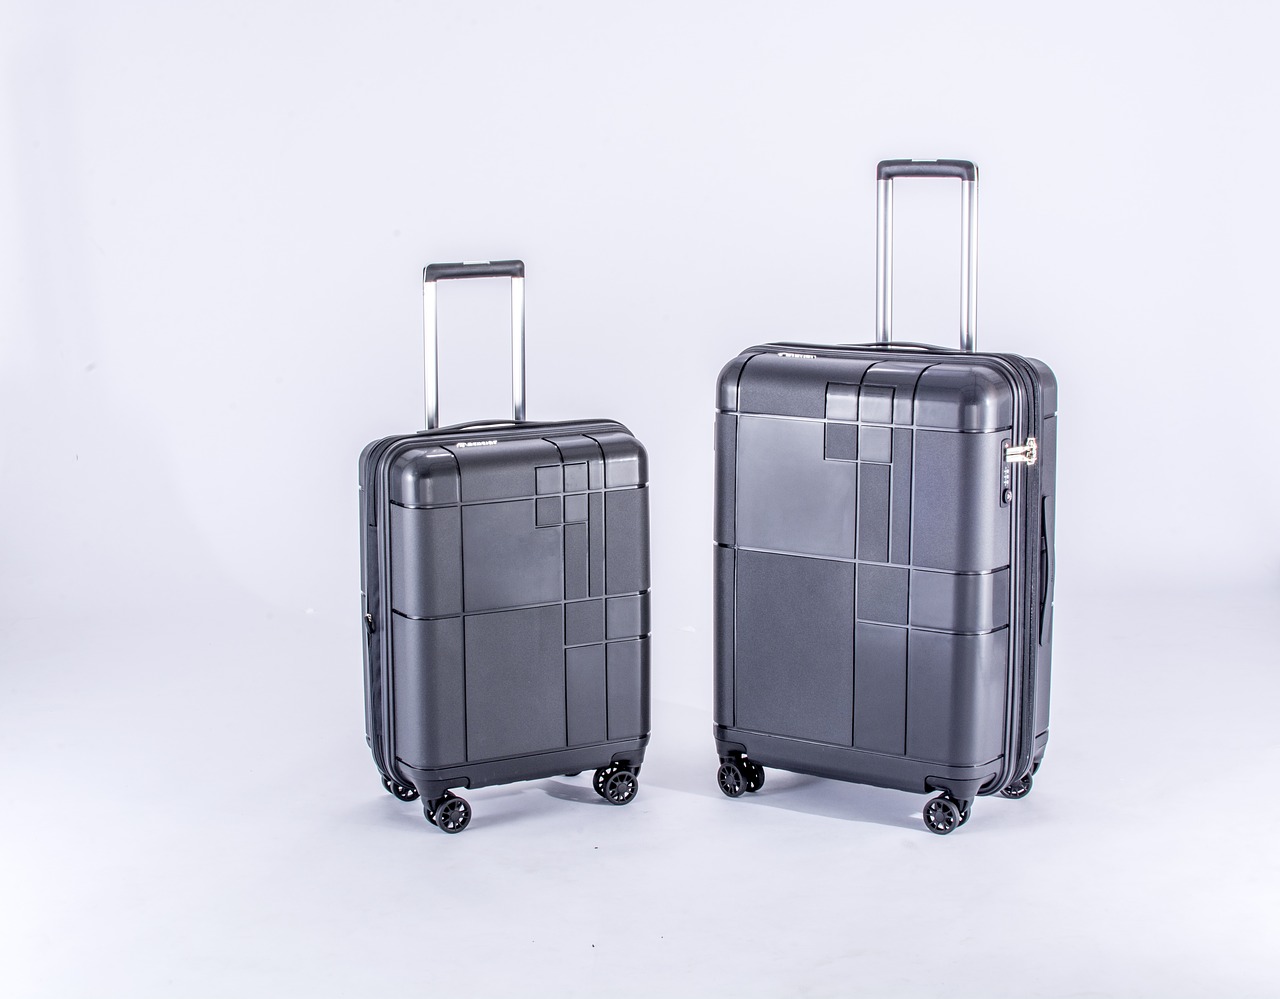 luggages case wheel lugguages free photo